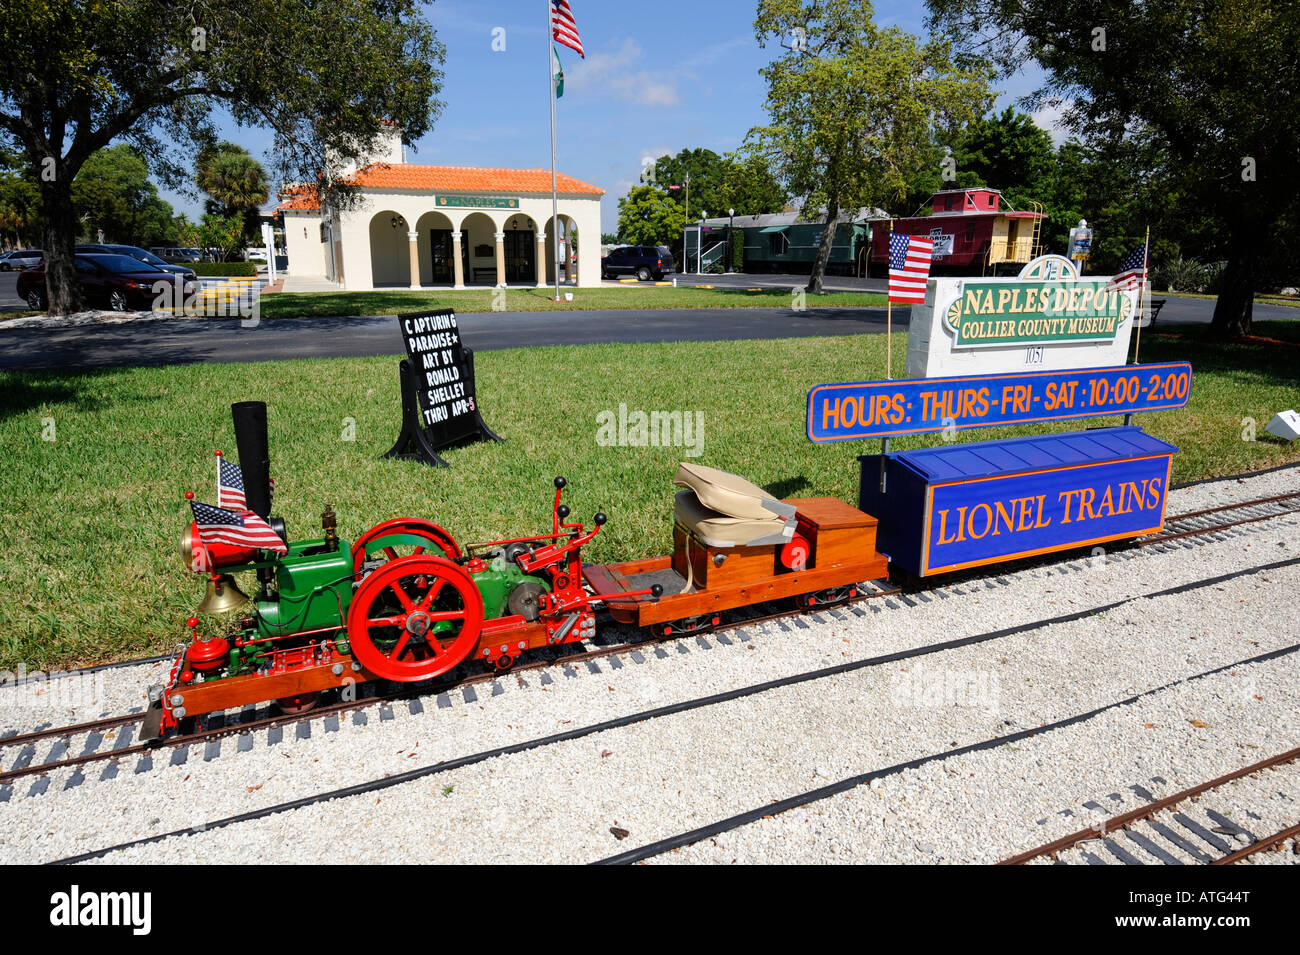 Naples Florida Train Depot Collier County Museum Banque D'Images